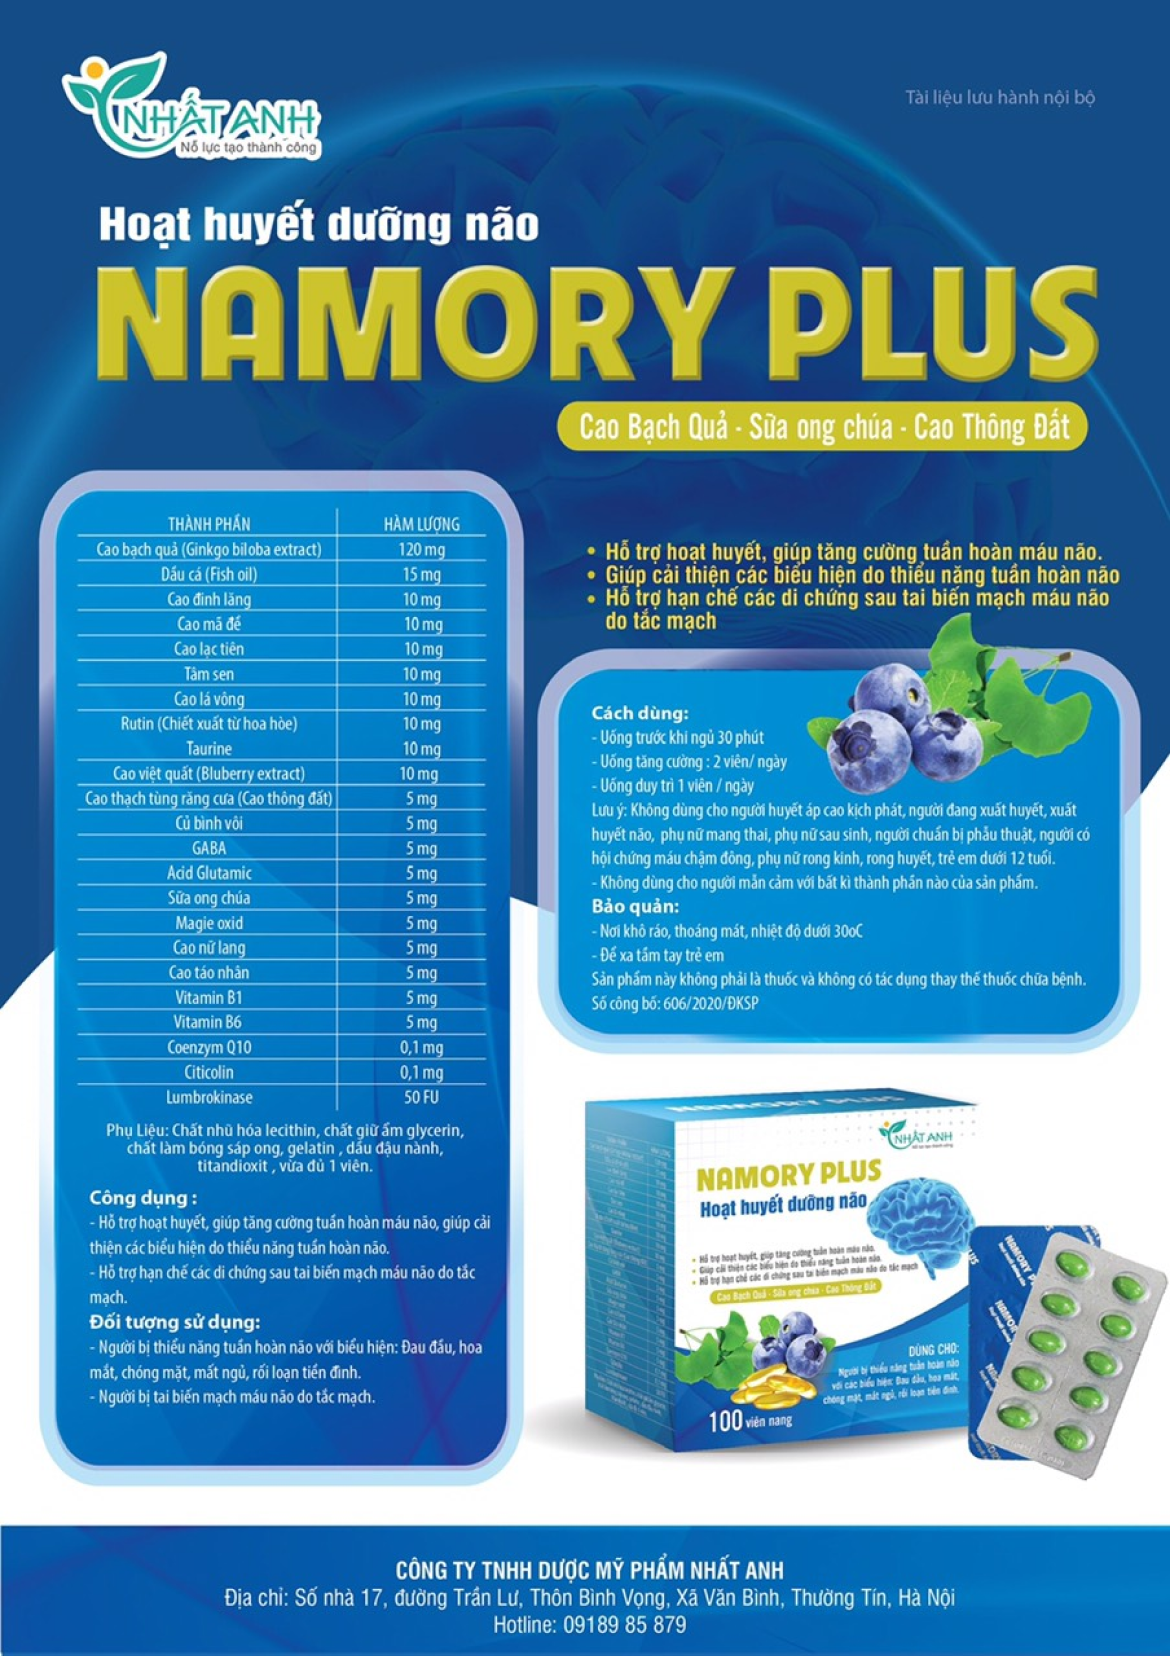 Hoạt huyết dưỡng não Namory Plus